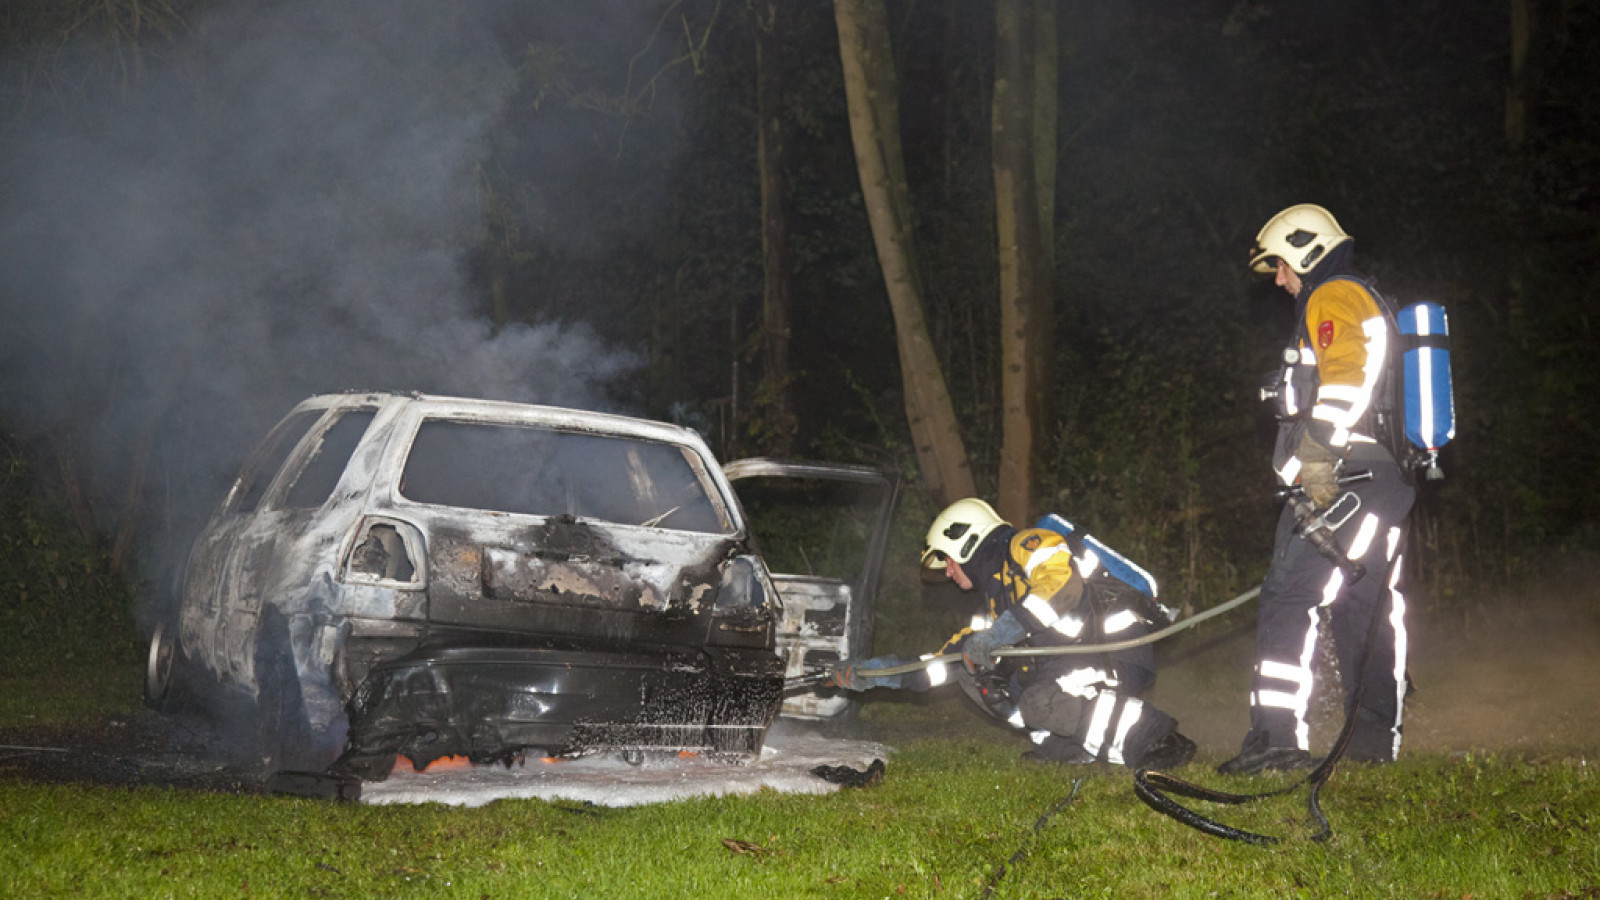 Verzoenen vacht condensor Kluis gevonden in brandende auto - NH Nieuws